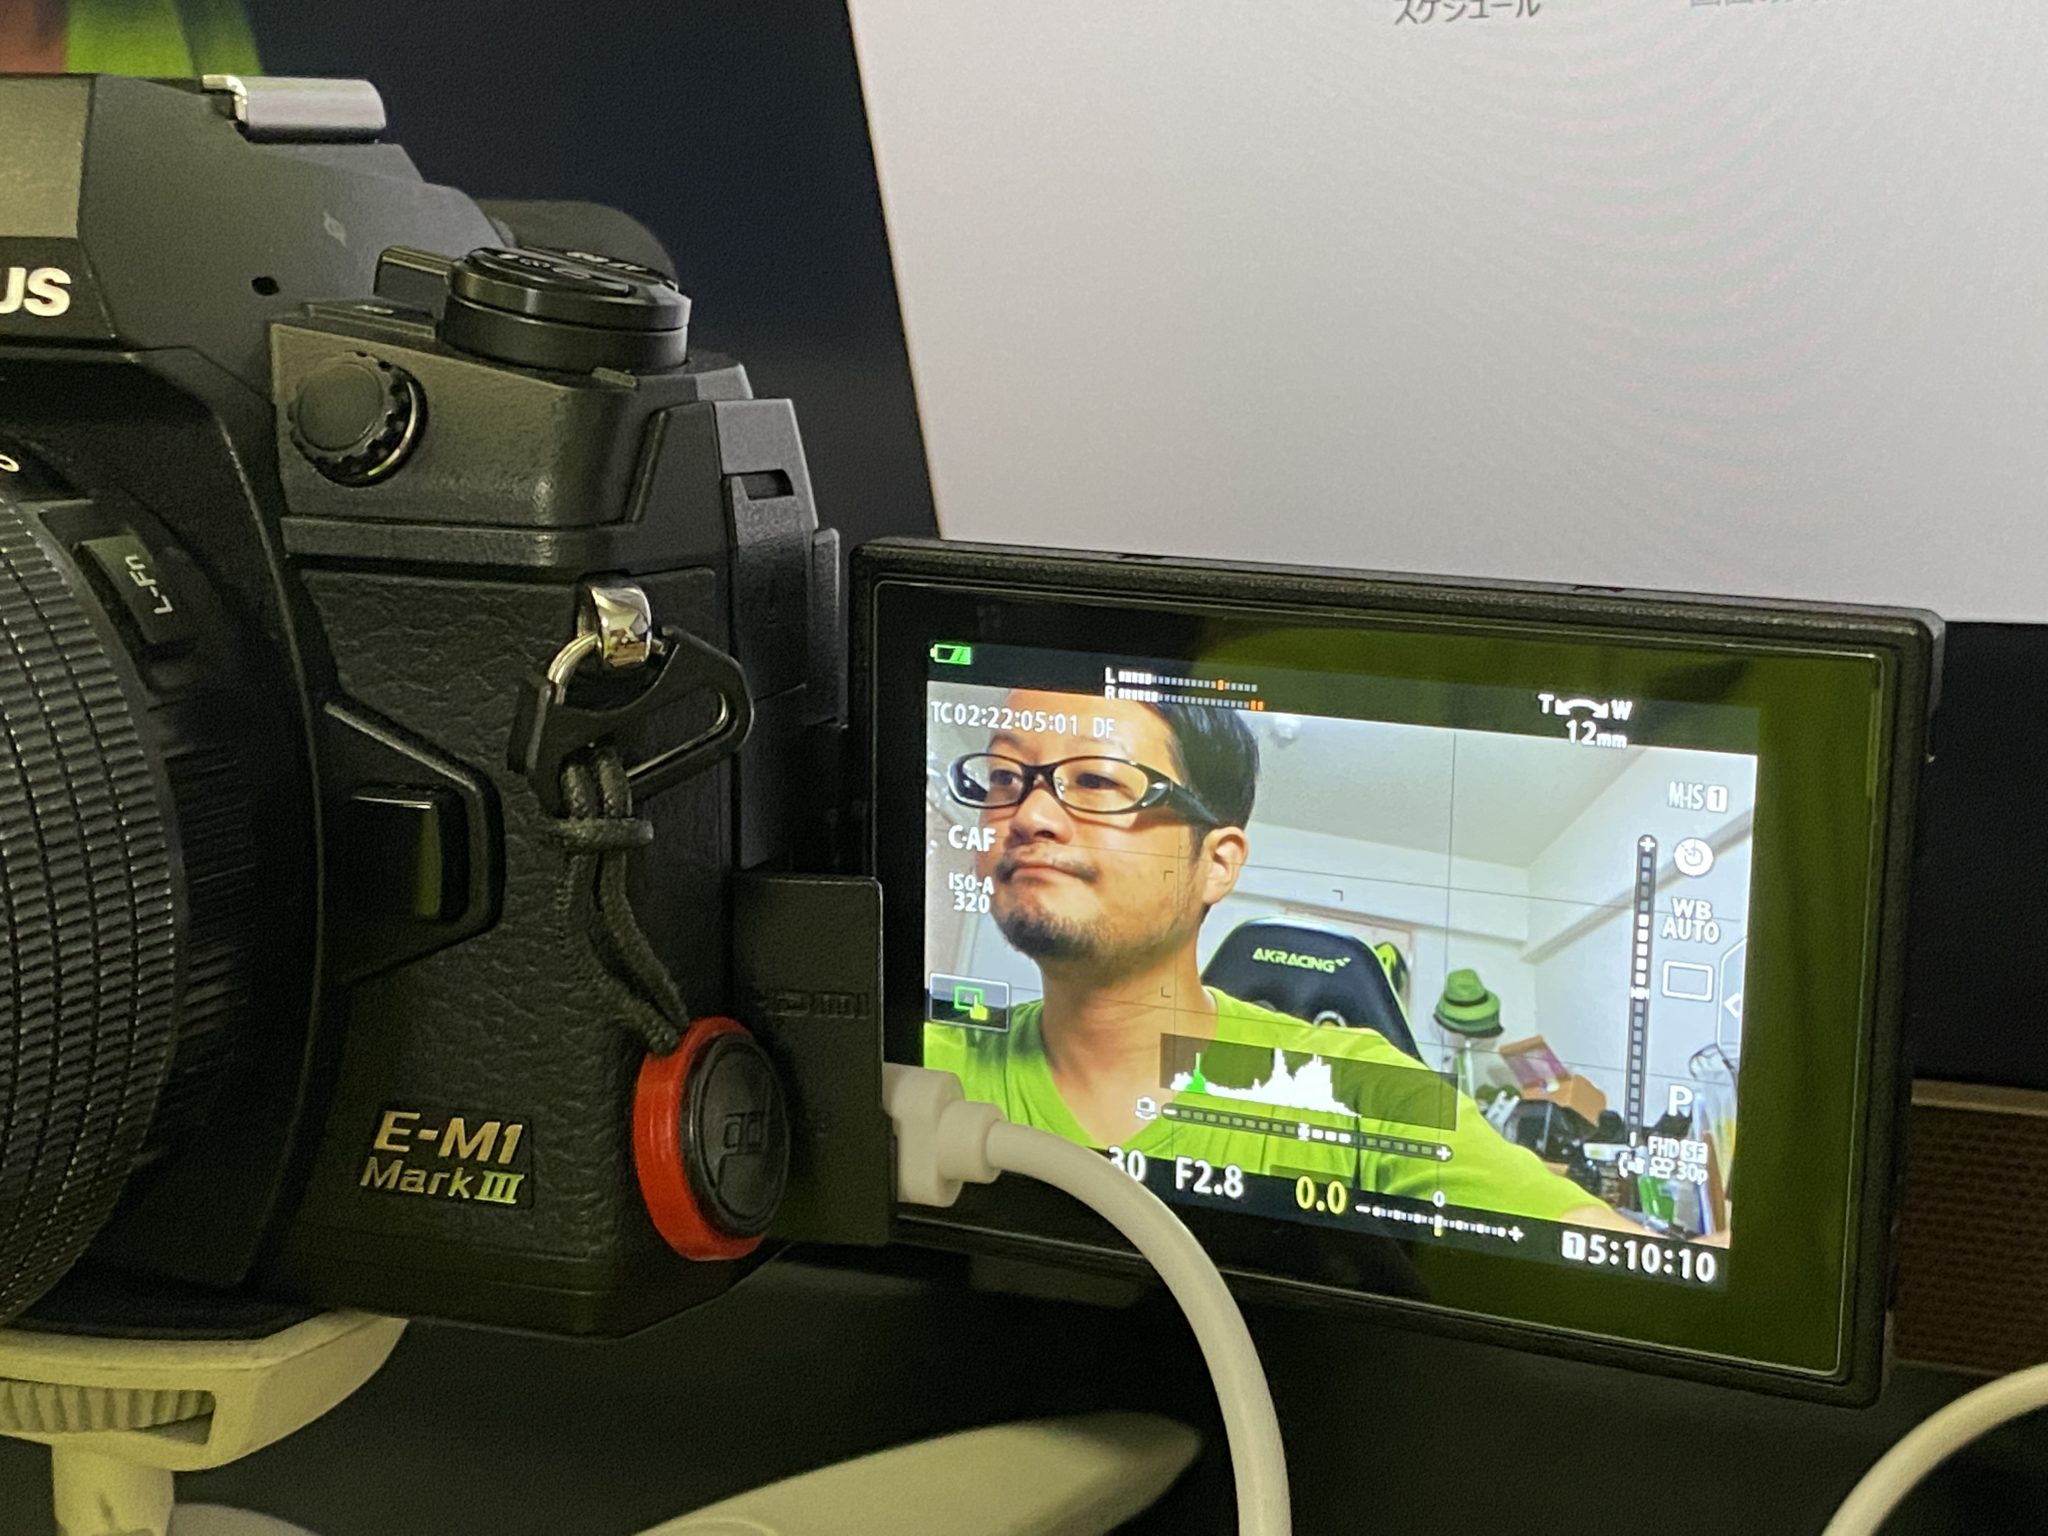 オリンパスのOM-DがWEBカムになる！OM-D Webcam Betaがリリースされたぞ！ - むねさだブログ